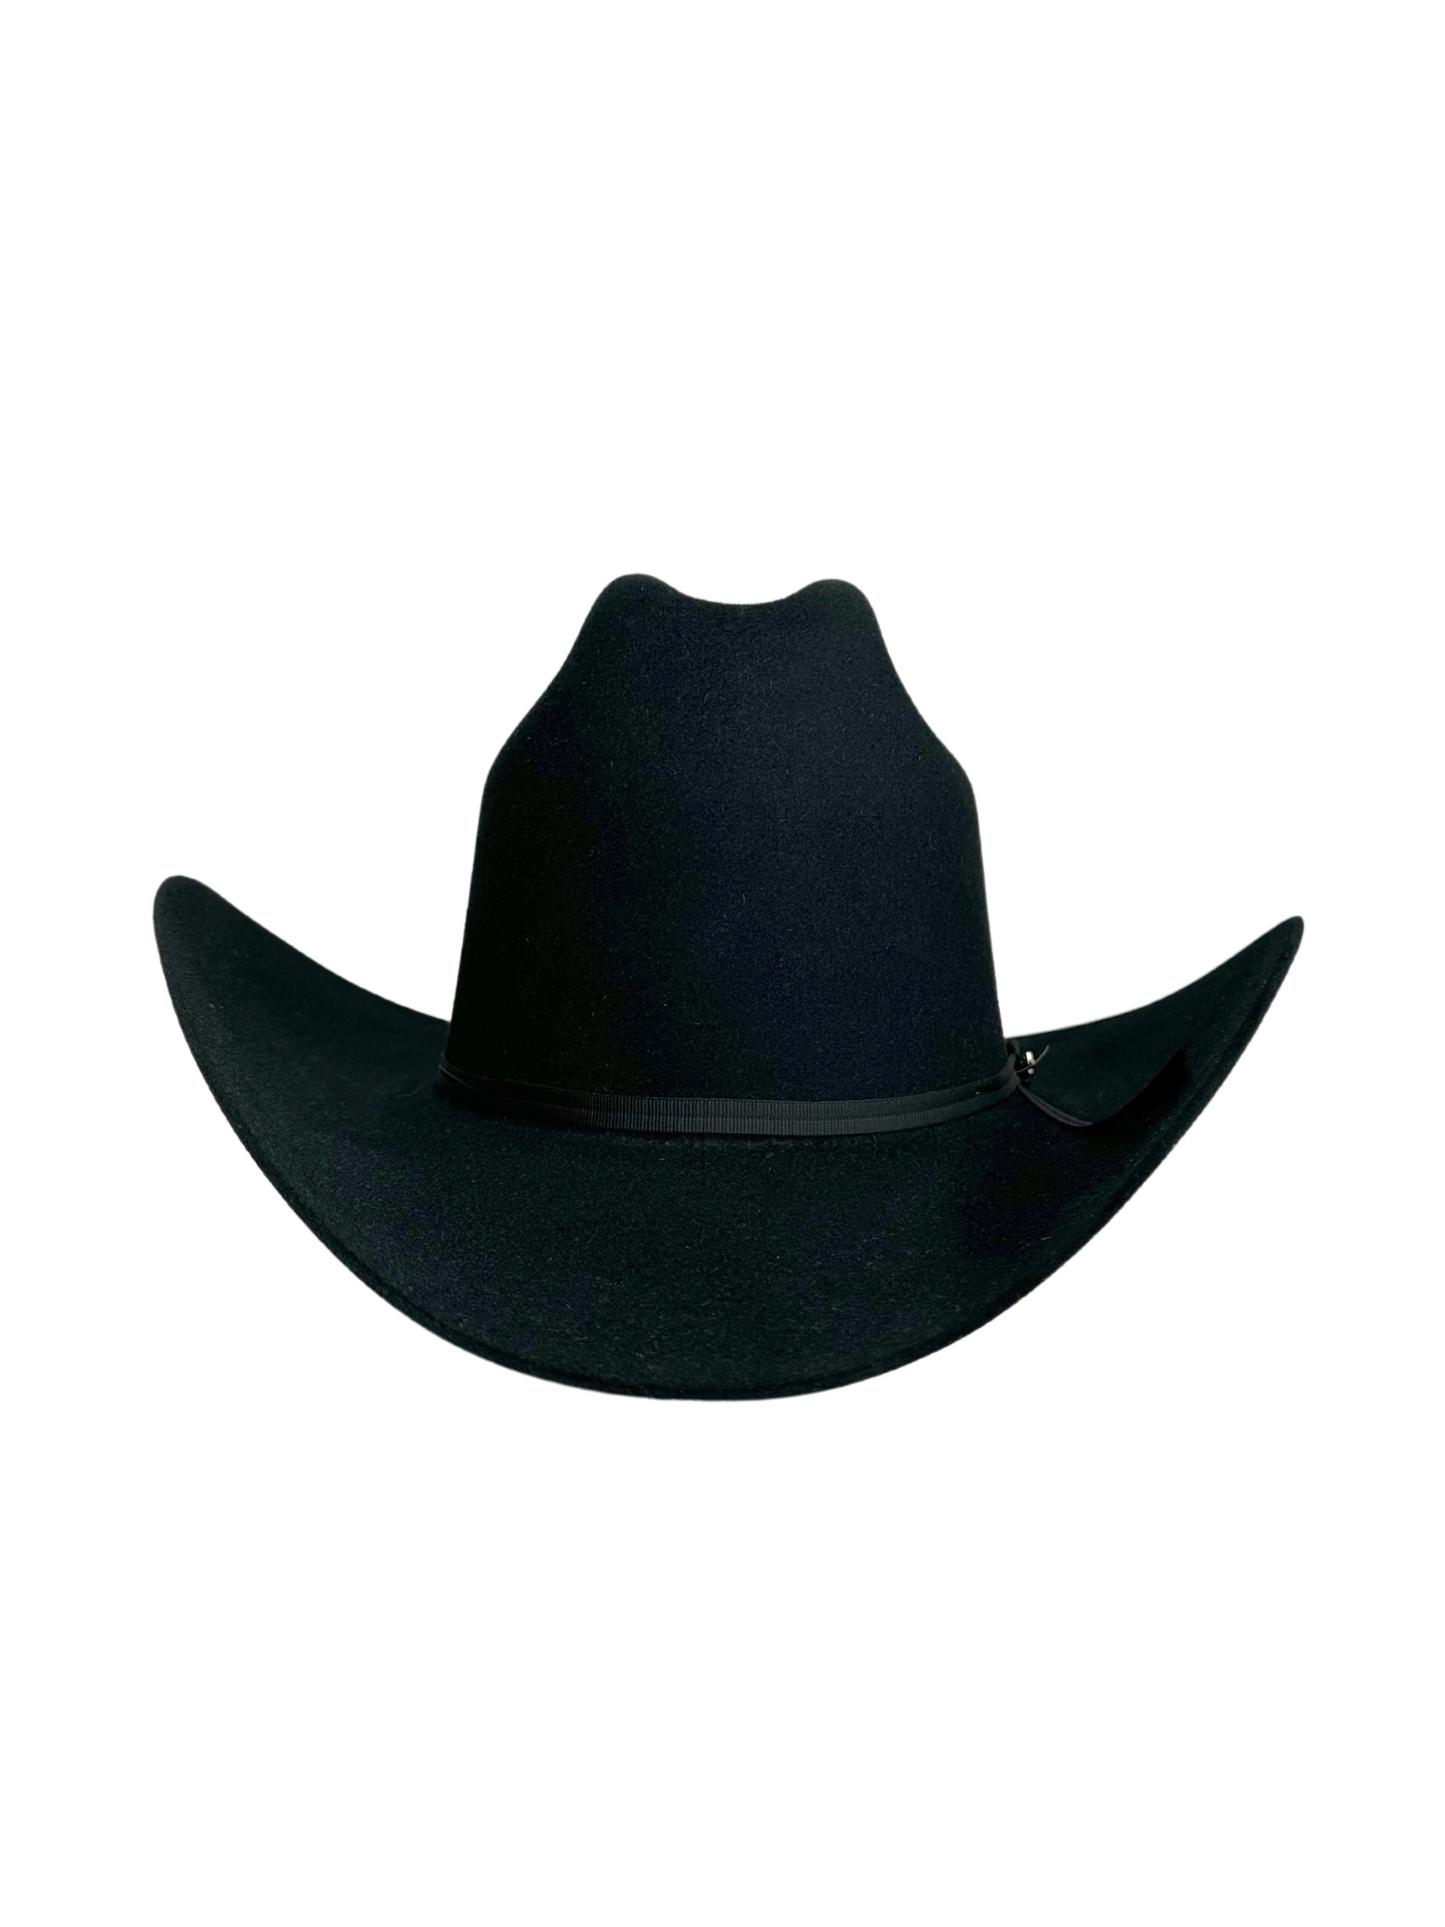 Stetson Rancher 6X Cowboy Hat - Black